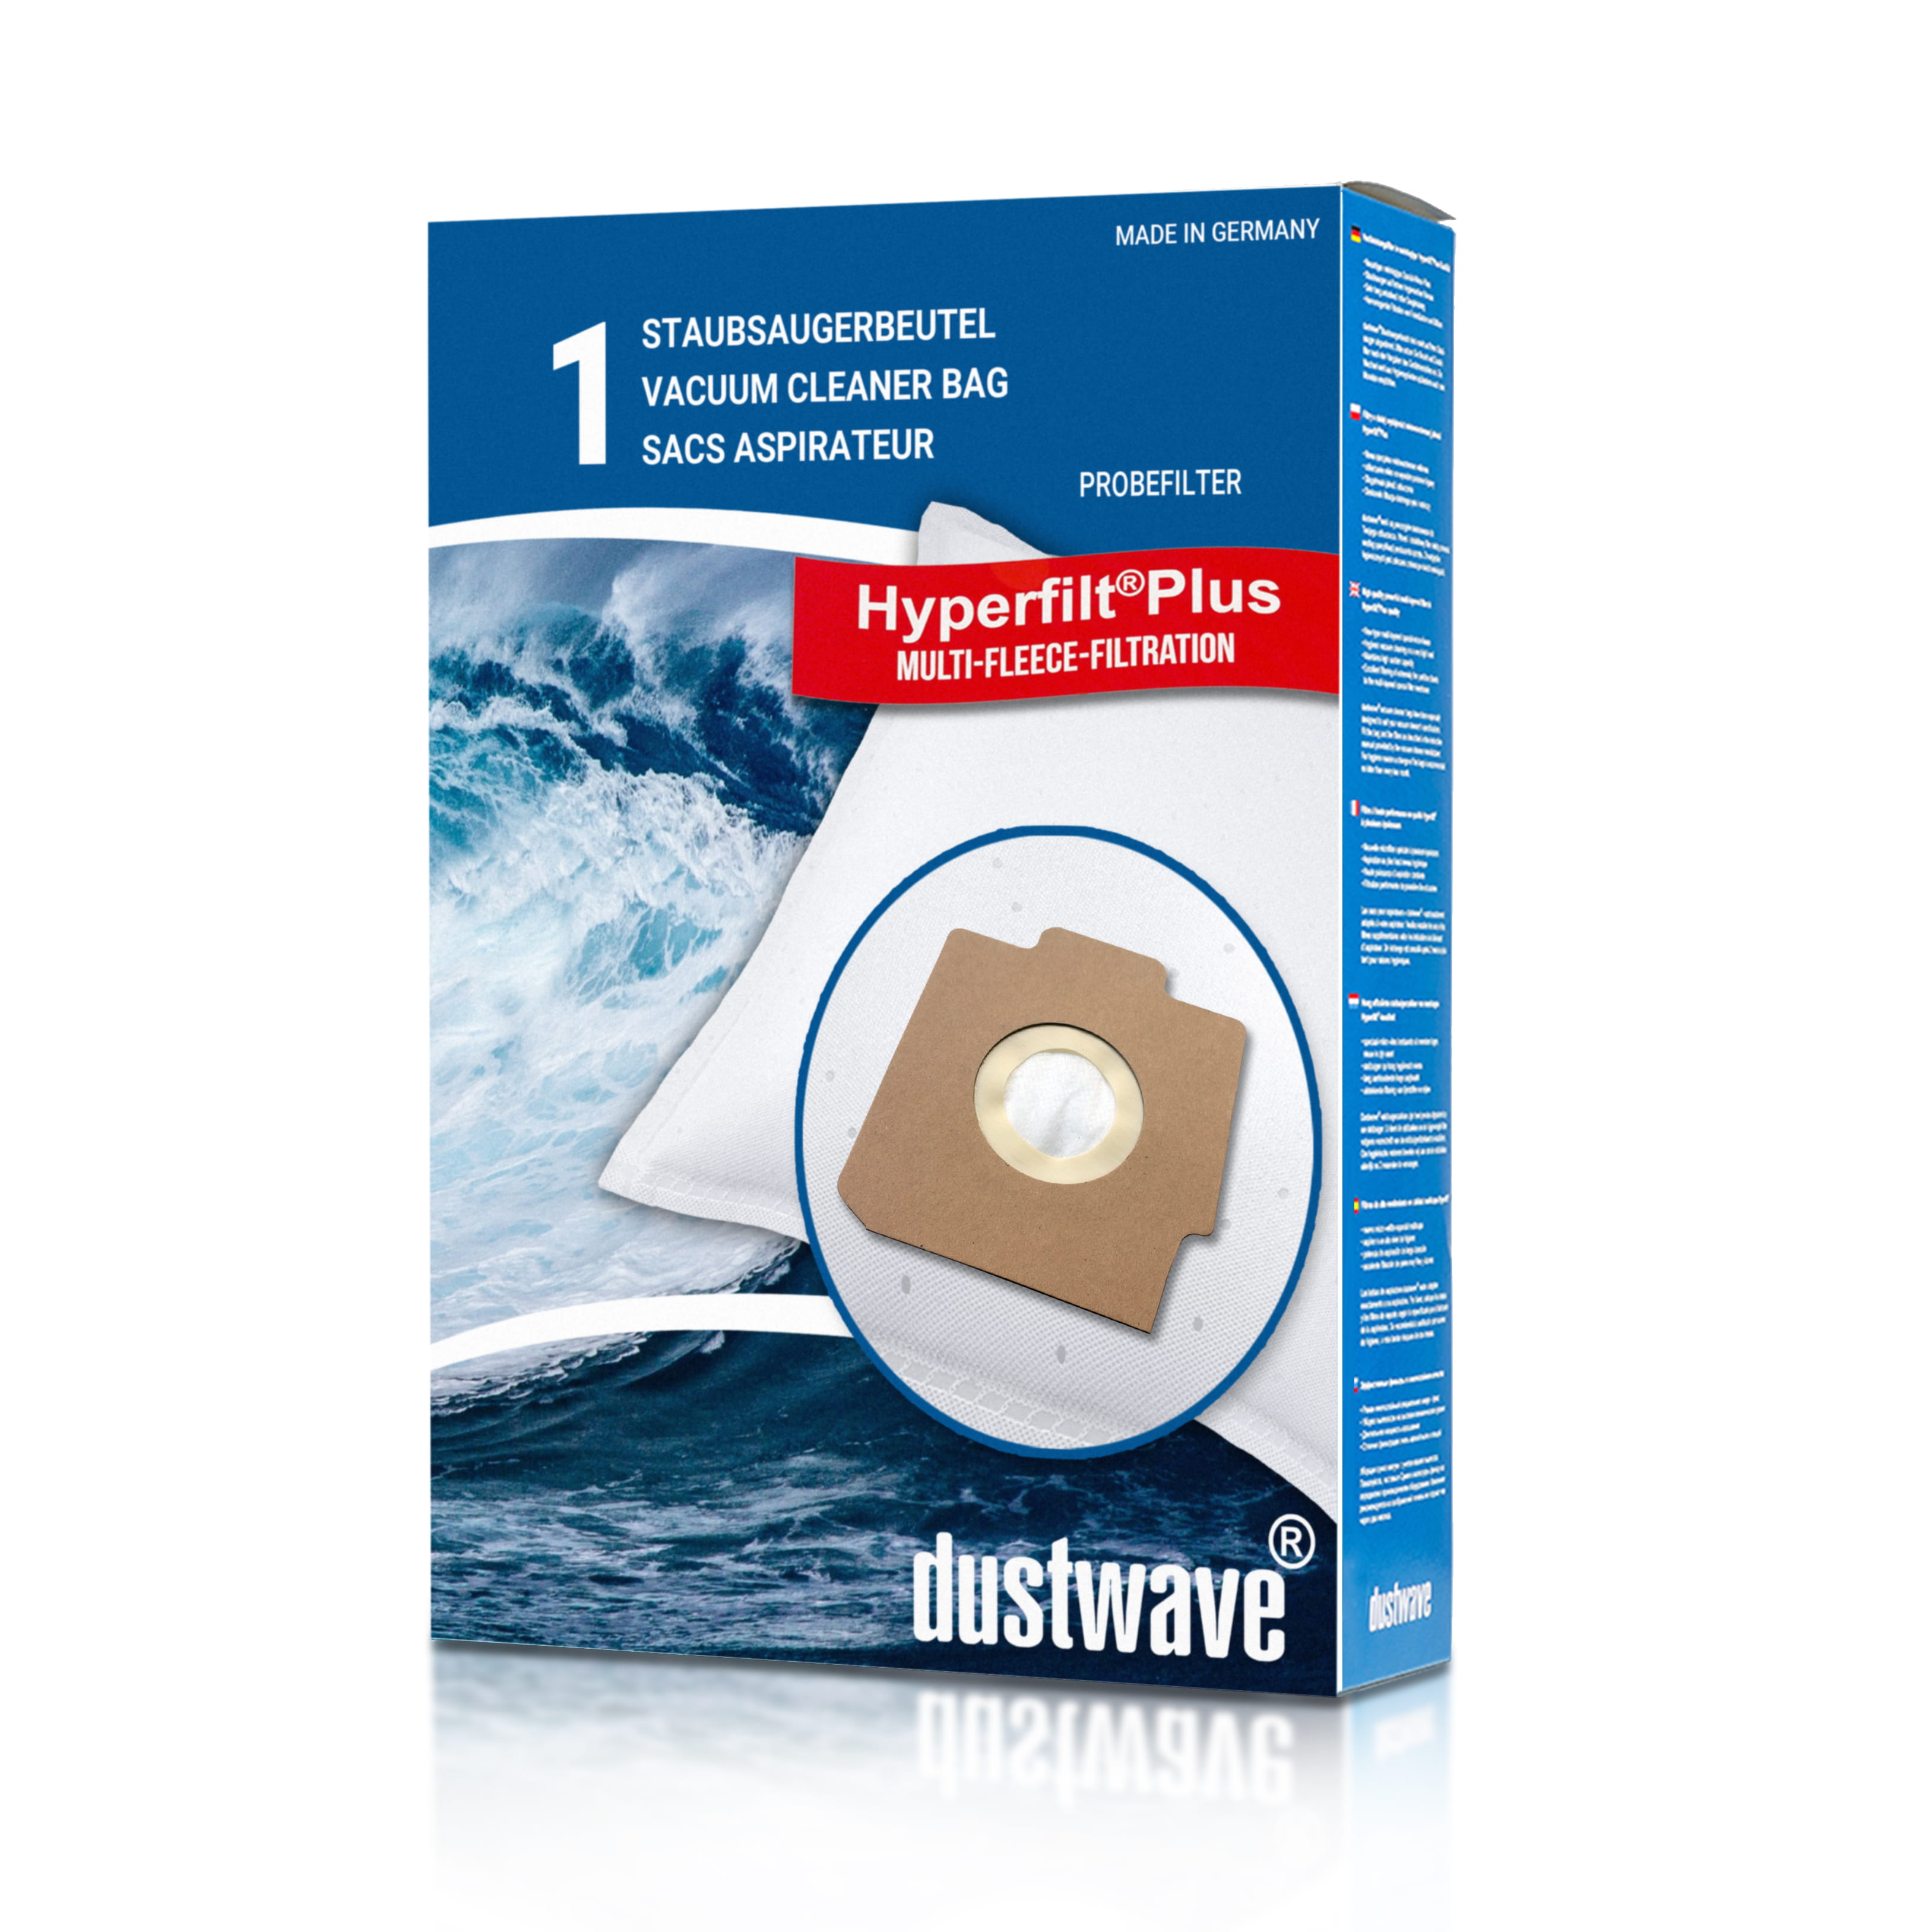 Dustwave® 1 Staubsaugerbeutel für Hoover SC260... / TRSC260 Alpina - hocheffizient, mehrlagiges Mikrovlies mit Hygieneverschluss - Made in Germany